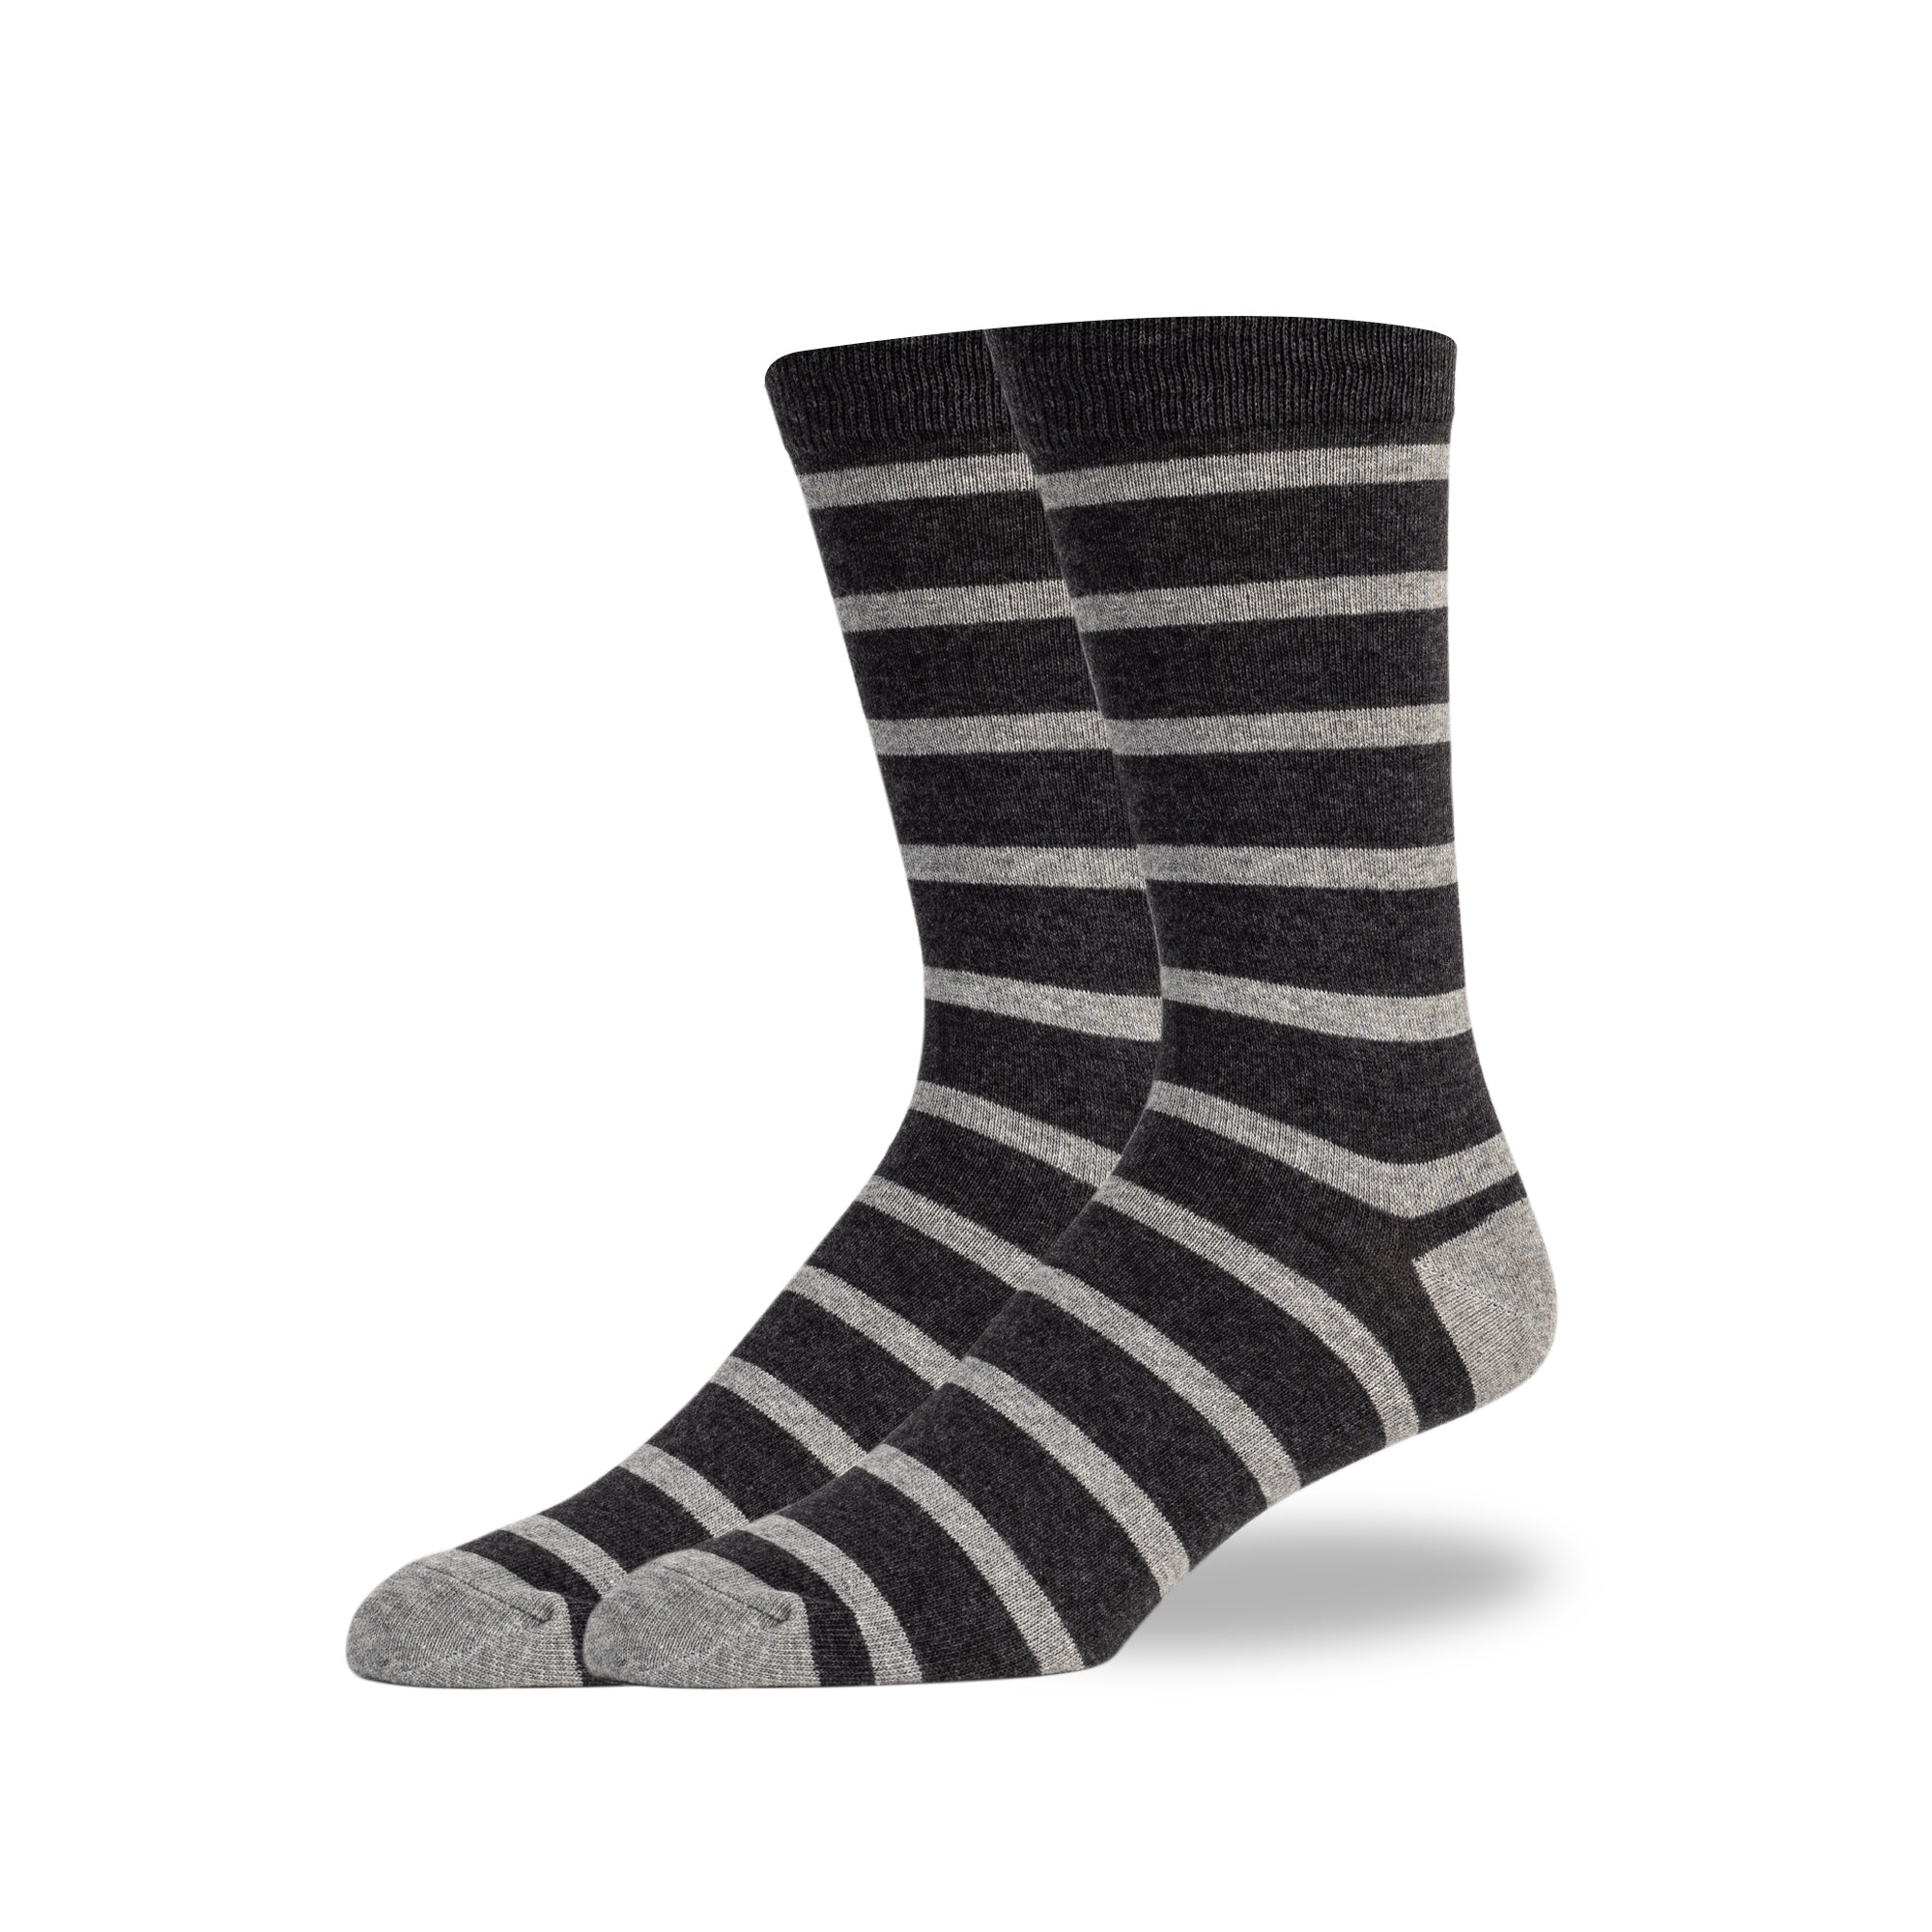 Charcoal & Heather Gray Stripe Socks - SprezzaBox